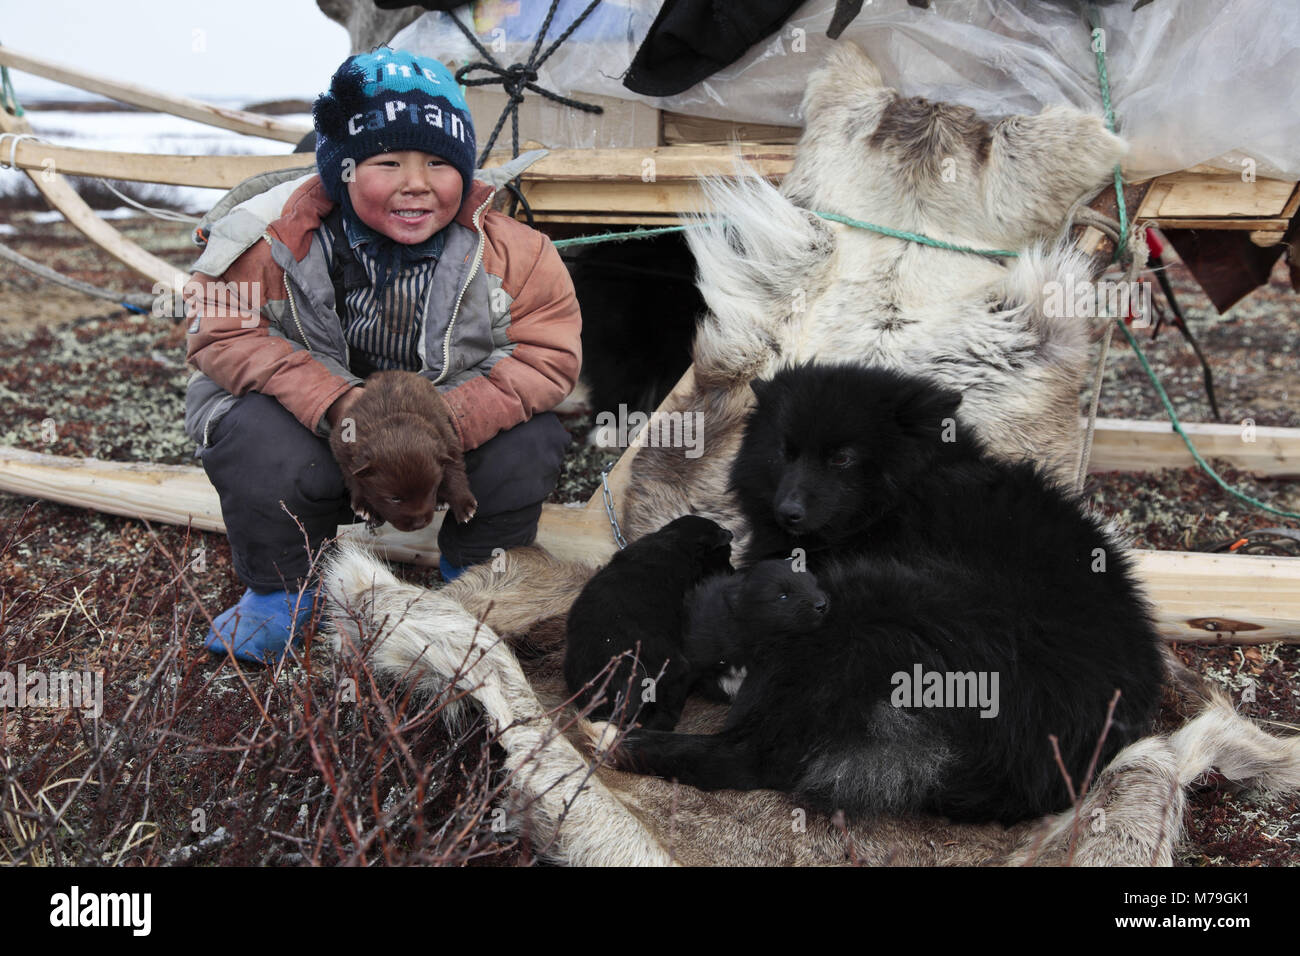 Northern Europe, Russia, Nanyar Mar, Nenets, reindeer shepherds, boy, child, shepherd's dogs, Stock Photo